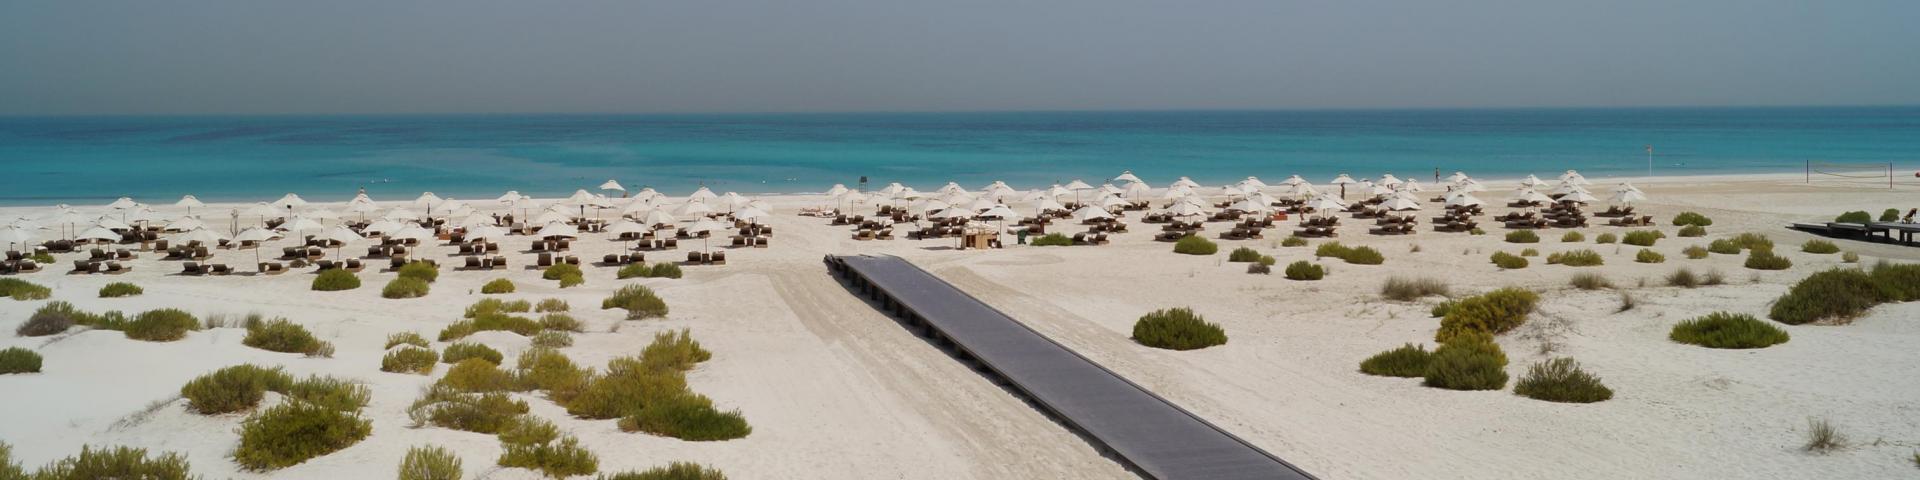 Abu Dhabi i Dubaj – plażowe wakacje z metropolią w tle 